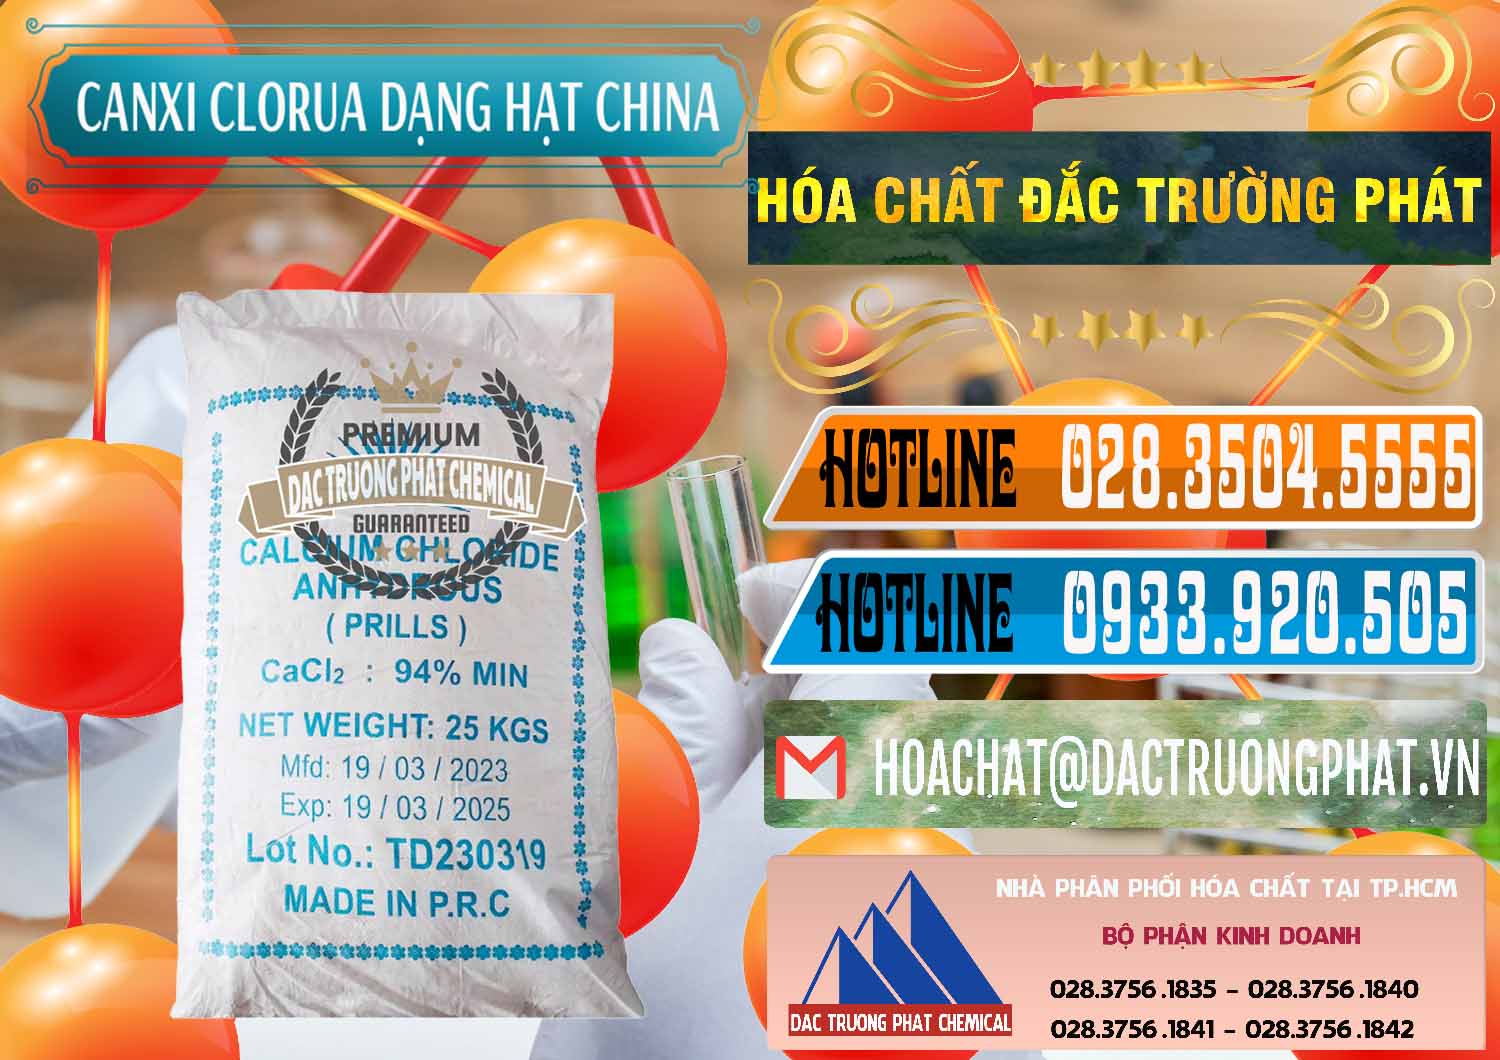 Chuyên cung cấp _ bán CaCl2 – Canxi Clorua 94% Dạng Hạt Trung Quốc China - 0373 - Đơn vị chuyên kinh doanh & cung cấp hóa chất tại TP.HCM - stmp.net